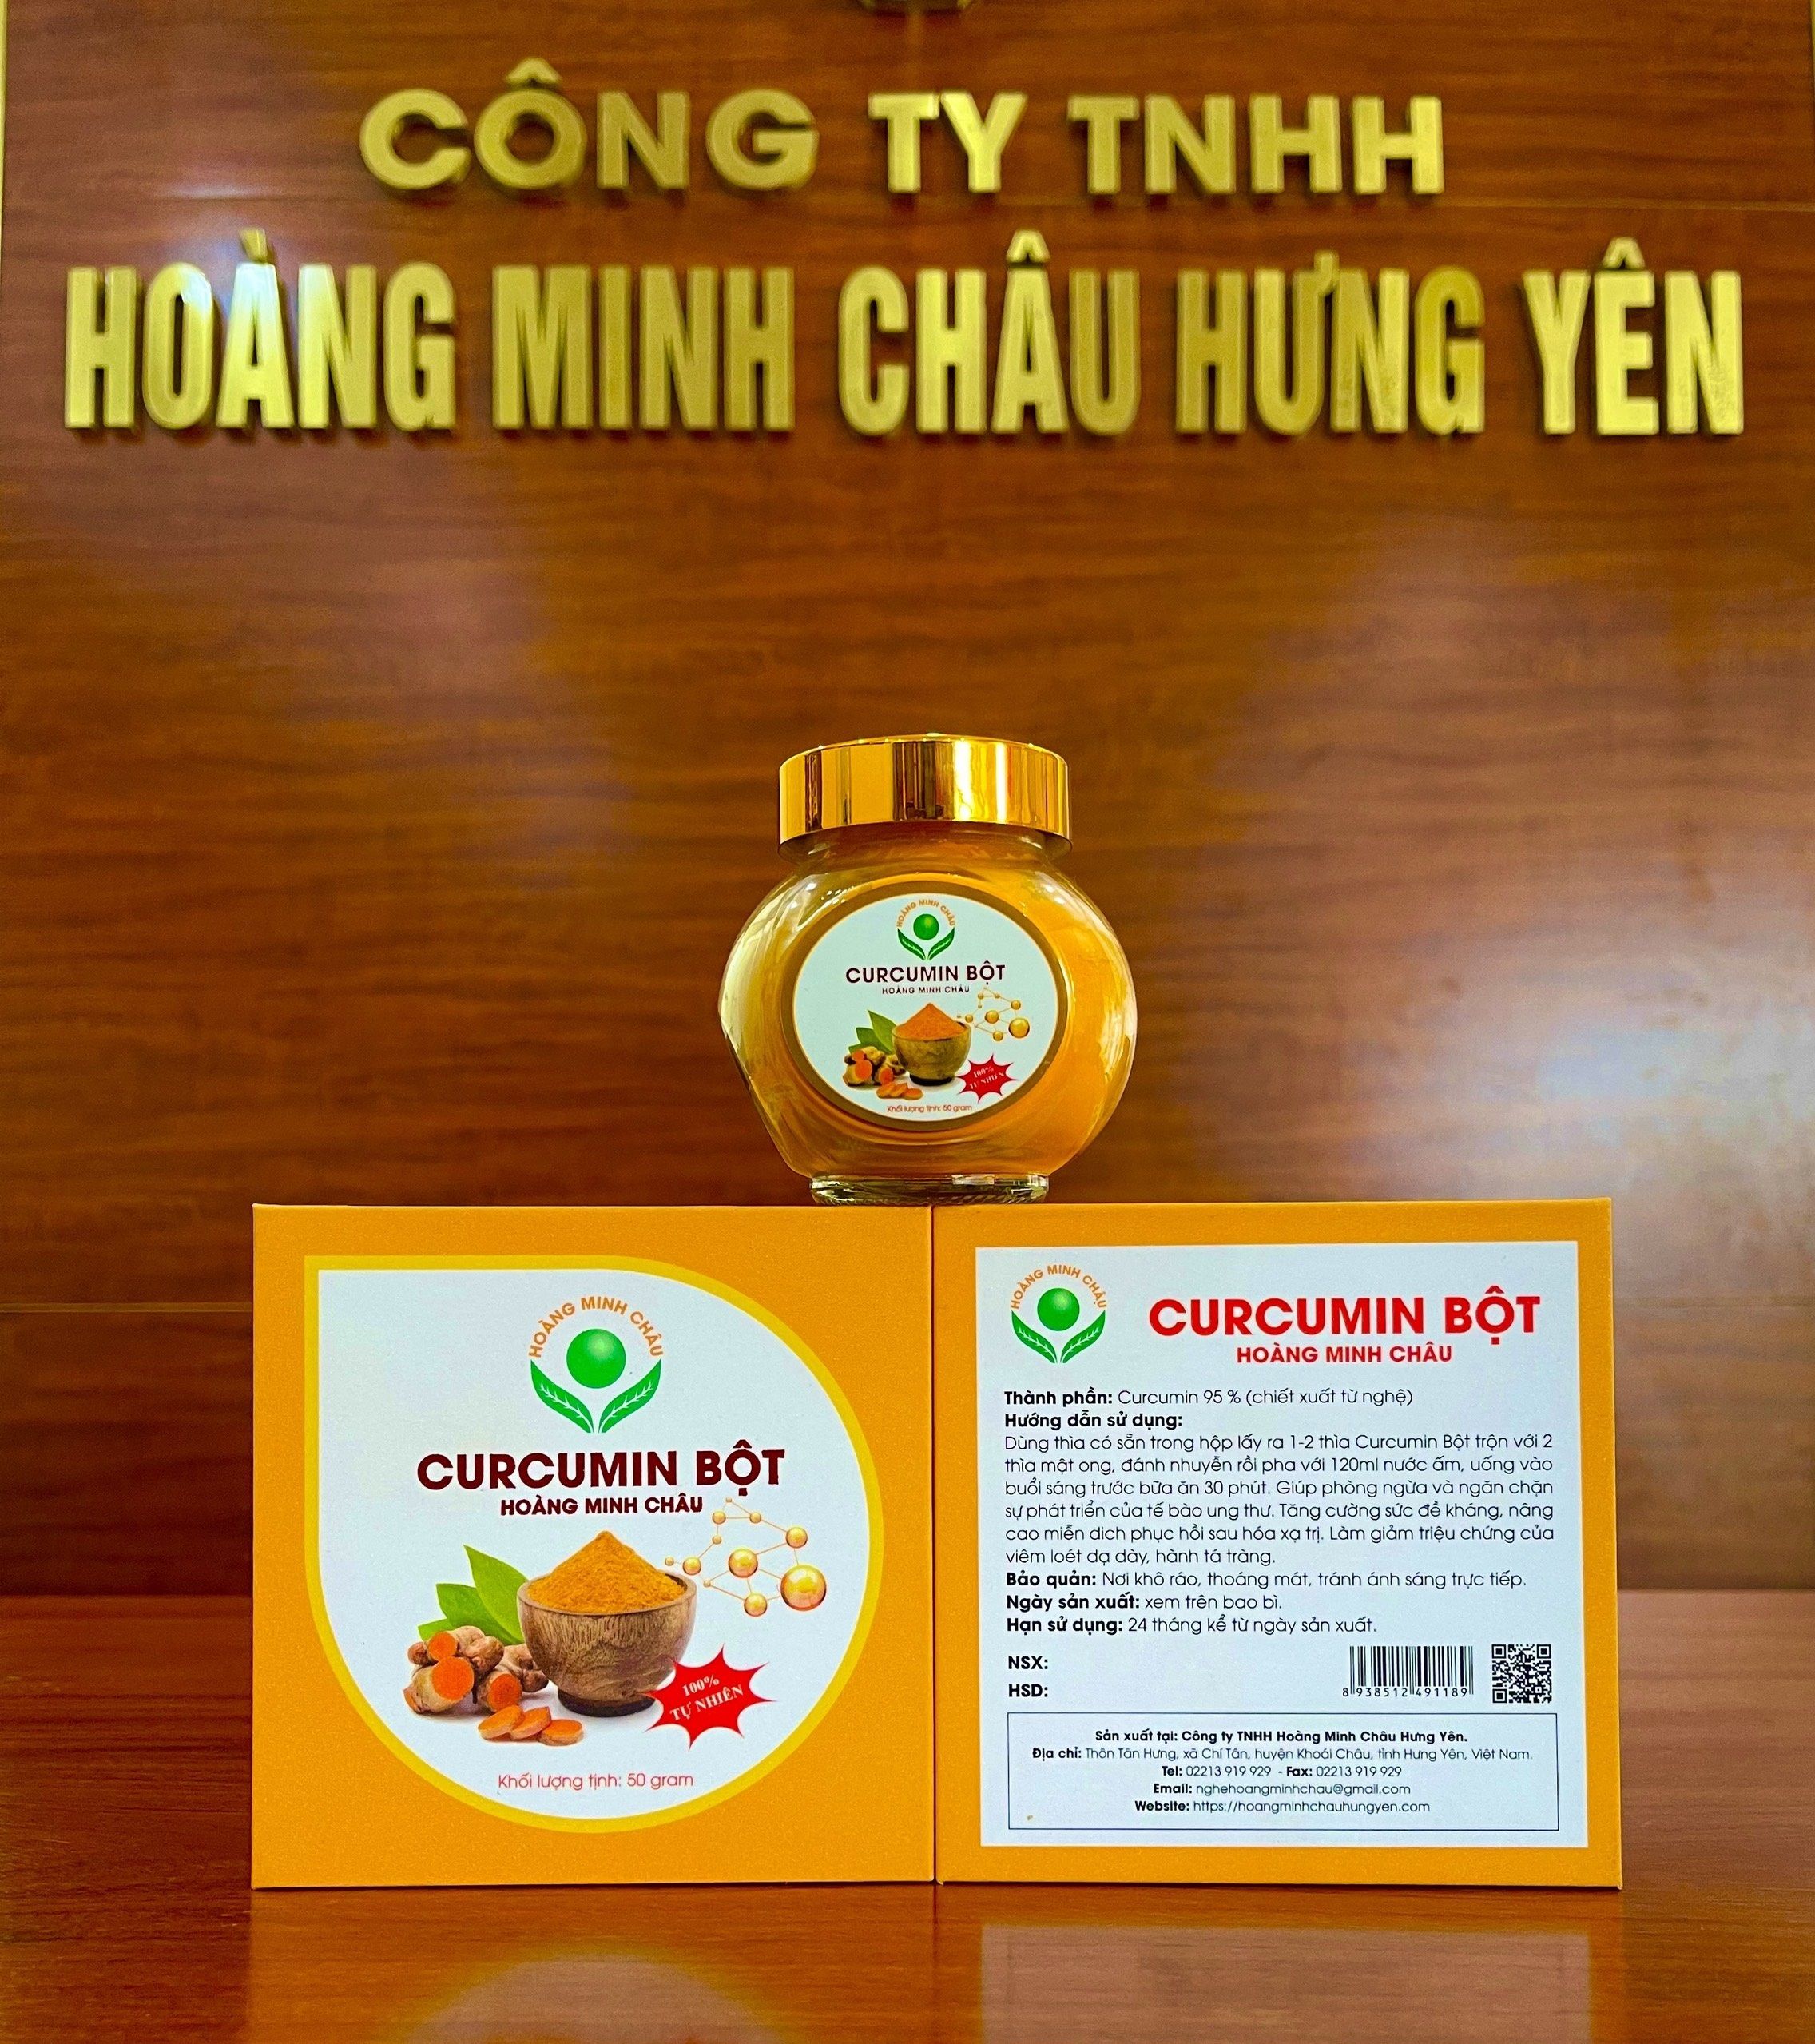 Thần dược sức khỏe mang tên CURCUMIN BỘT Hoàng Minh Châu Hưng Yên